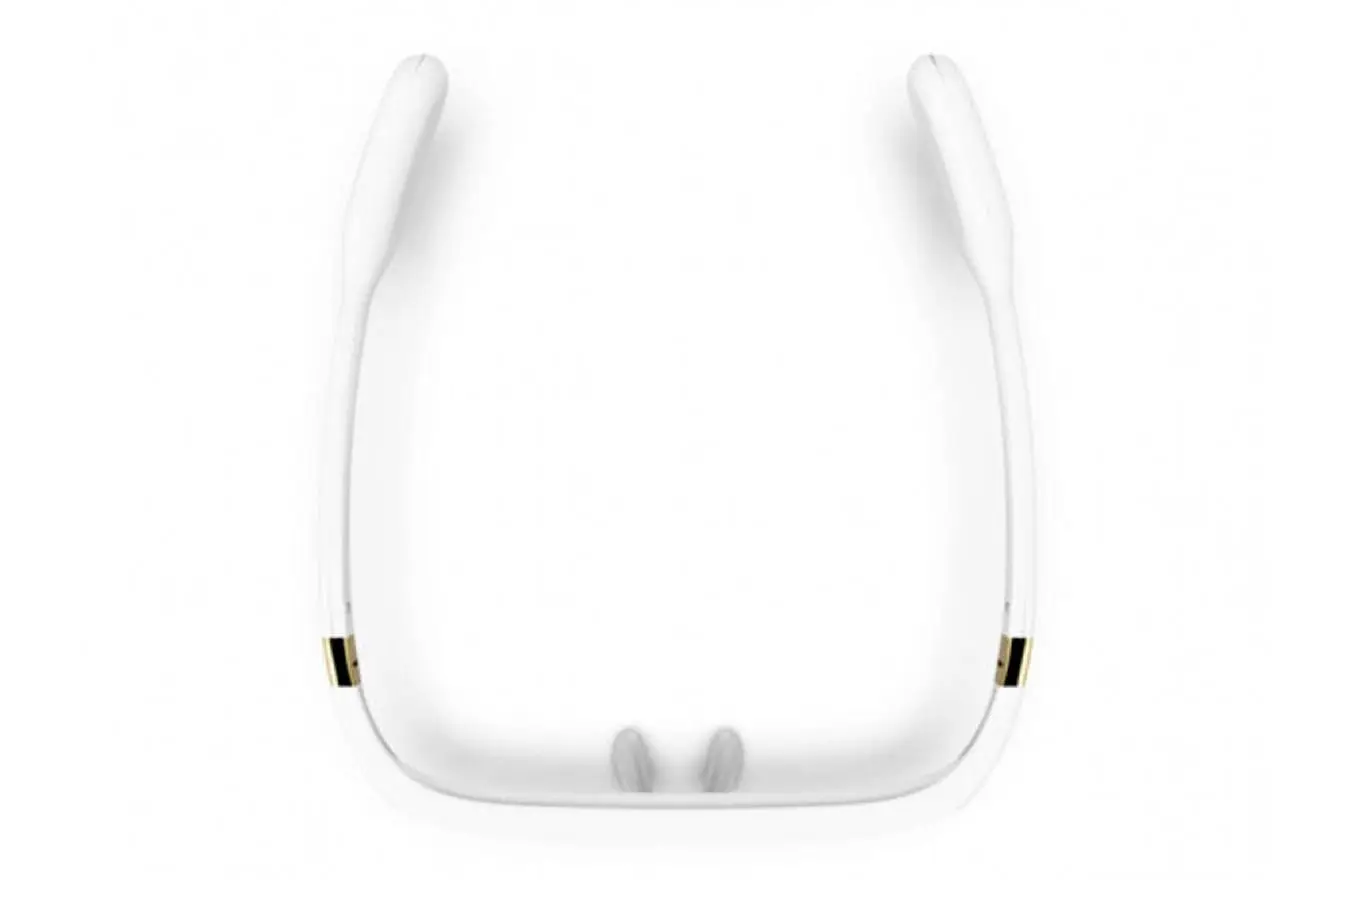 Eynək işıq terapiyası üçün Pegasi Smart Sleep Glasses II (white) - 3 - большое изображение